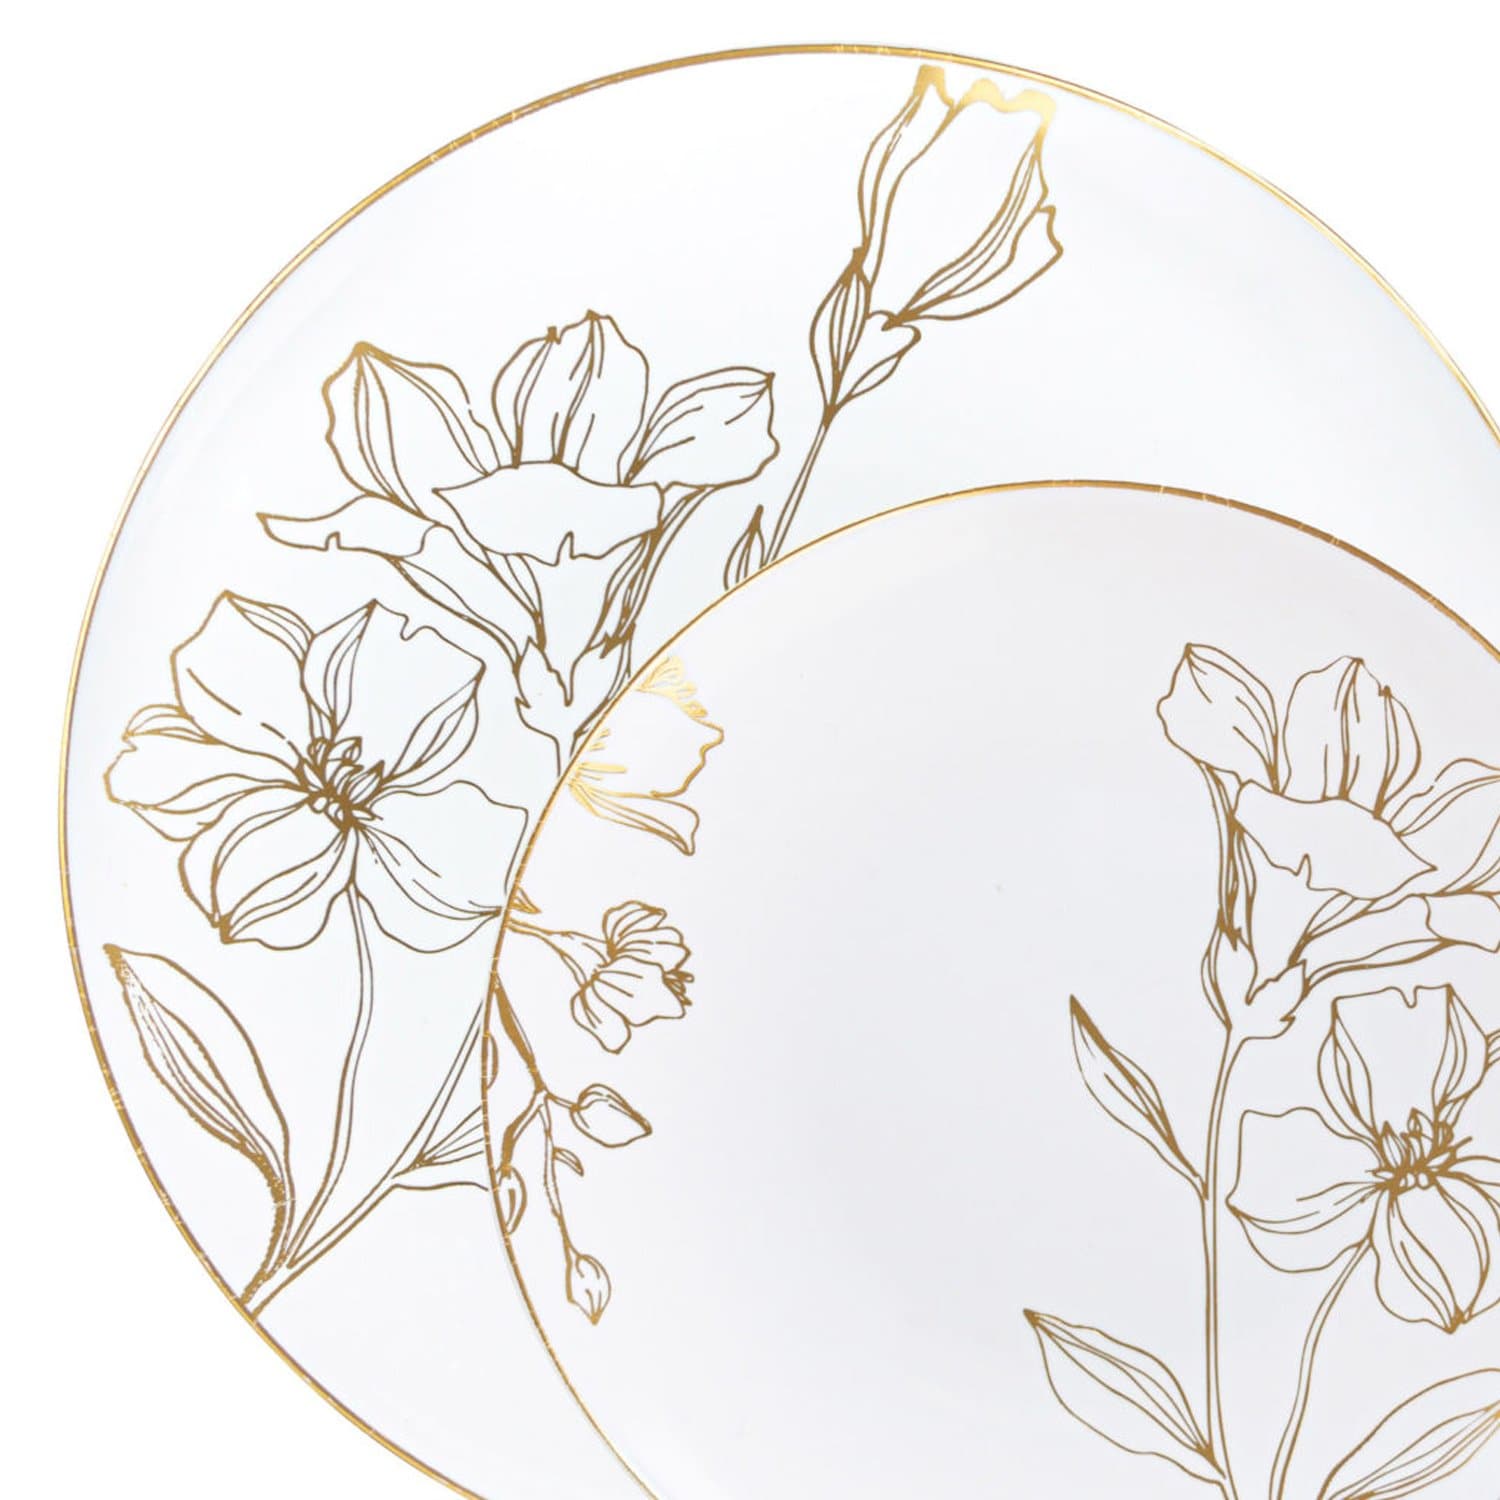 COMBO Antique Gold Elegant Floral Wedding Dinner Plate sets Plates Blue Sky   